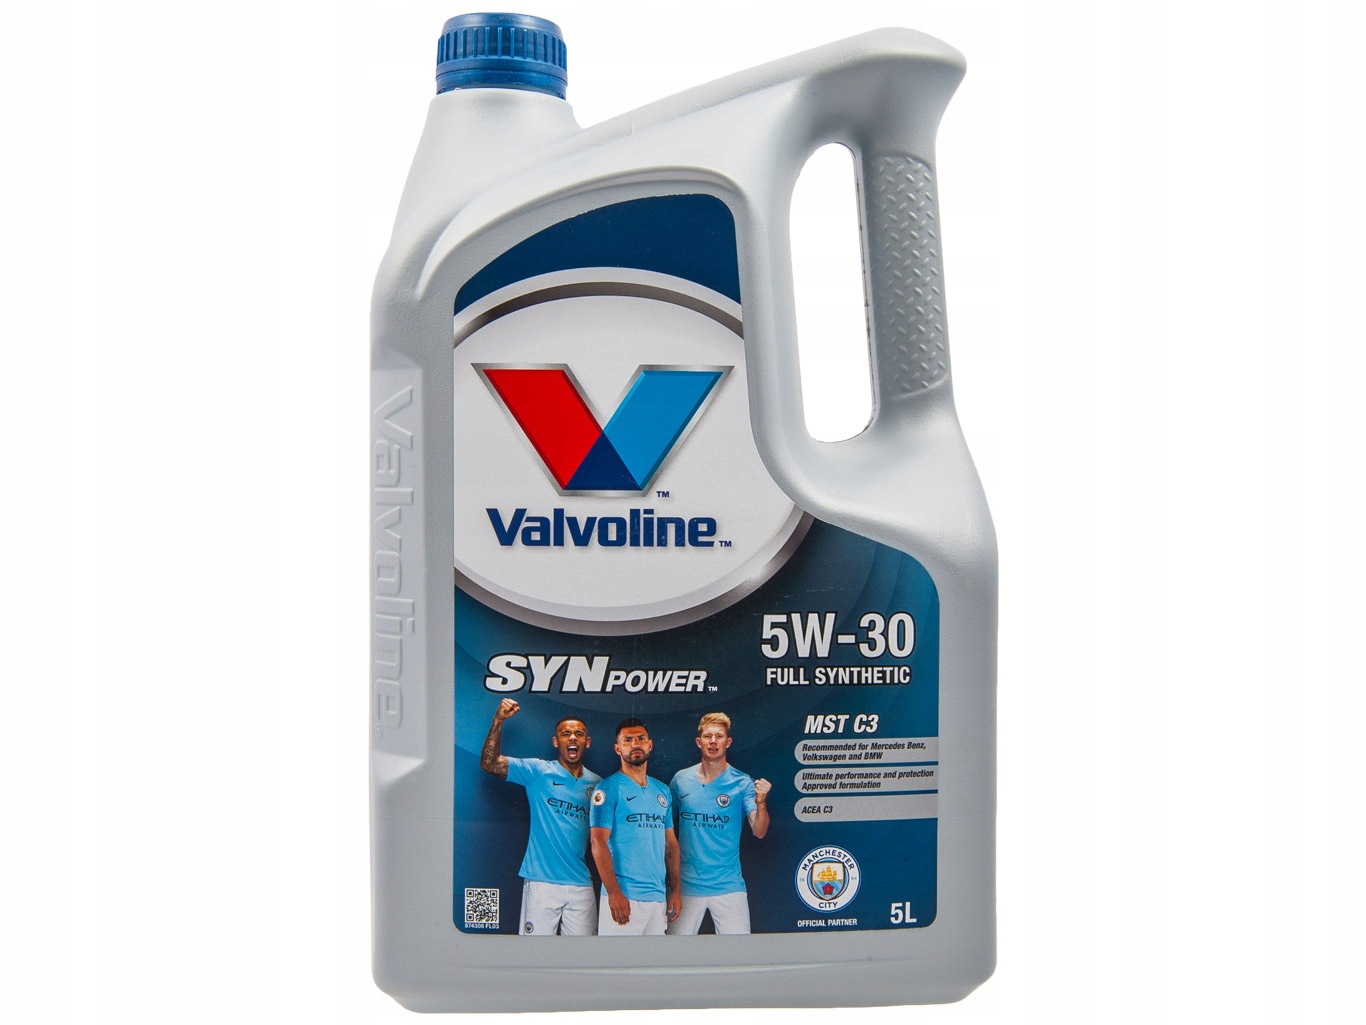 Valvoline synpower 5w-30: синтетическое масло для легковых автомобилей